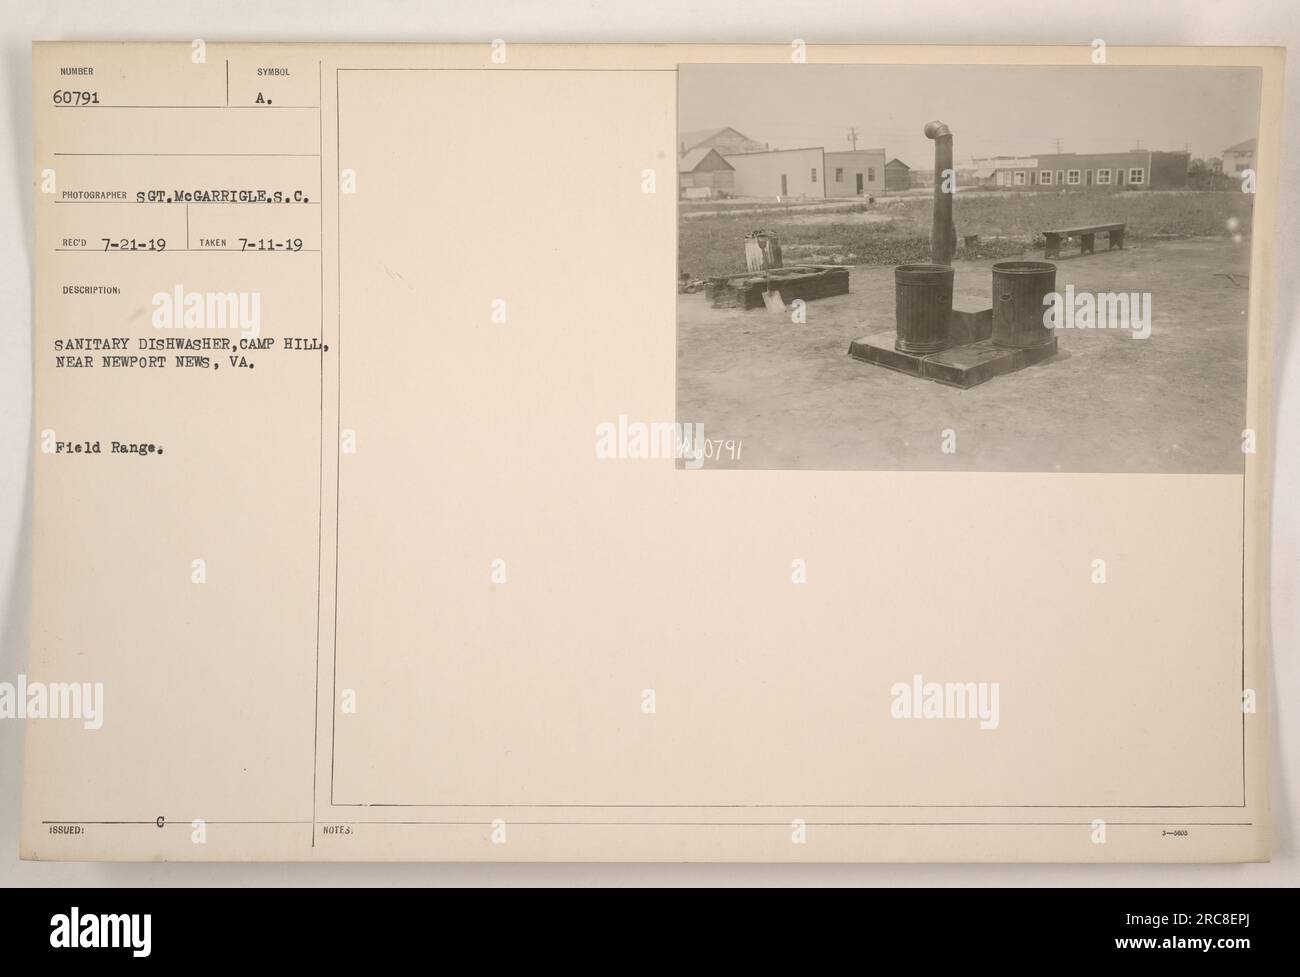 Photographie d'un camp militaire américain à Camp Hill, près de Newport News, Virginie pendant la première Guerre mondiale. L'image montre une plage de champ avec un lave-vaisselle sanitaire. Prise le 11 juillet 1919 et photographiée par SOT.MeGARRIGLE.S.C. avec le numéro de catalogue 60791. Banque D'Images